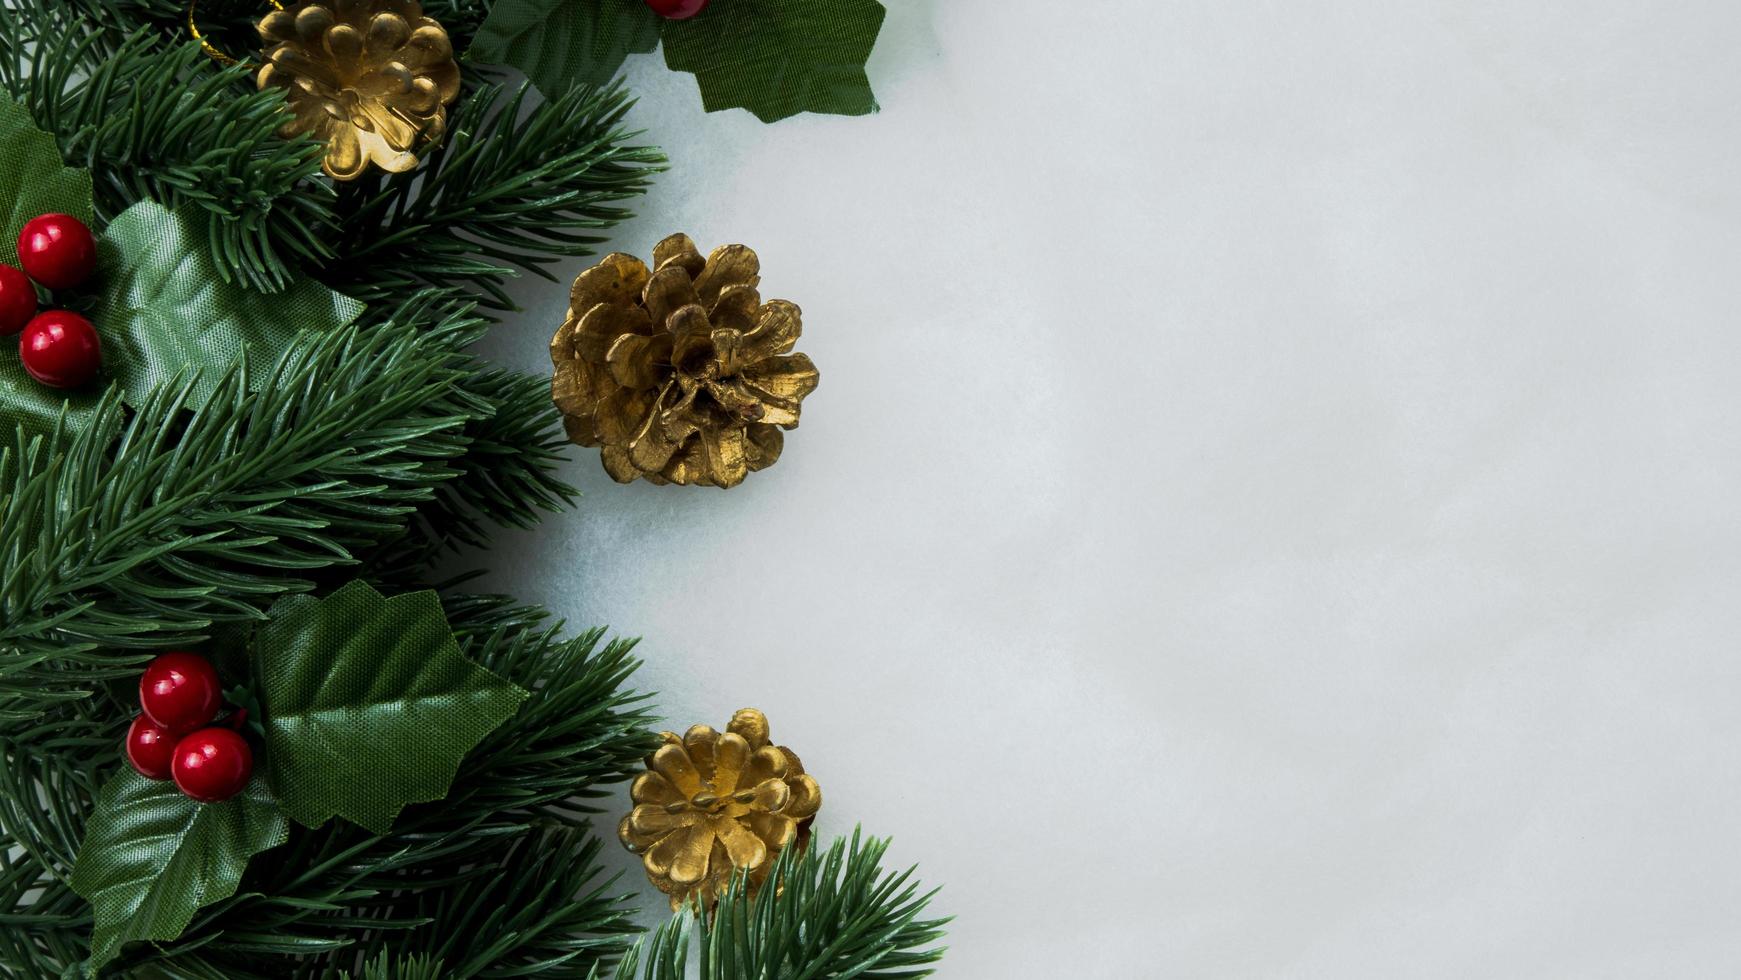 Weihnachtsschmuck, Kiefernblätter, Bälle, Beeren auf Grunge-Hintergrund, selektiver Fokus Weihnachtskonzept foto